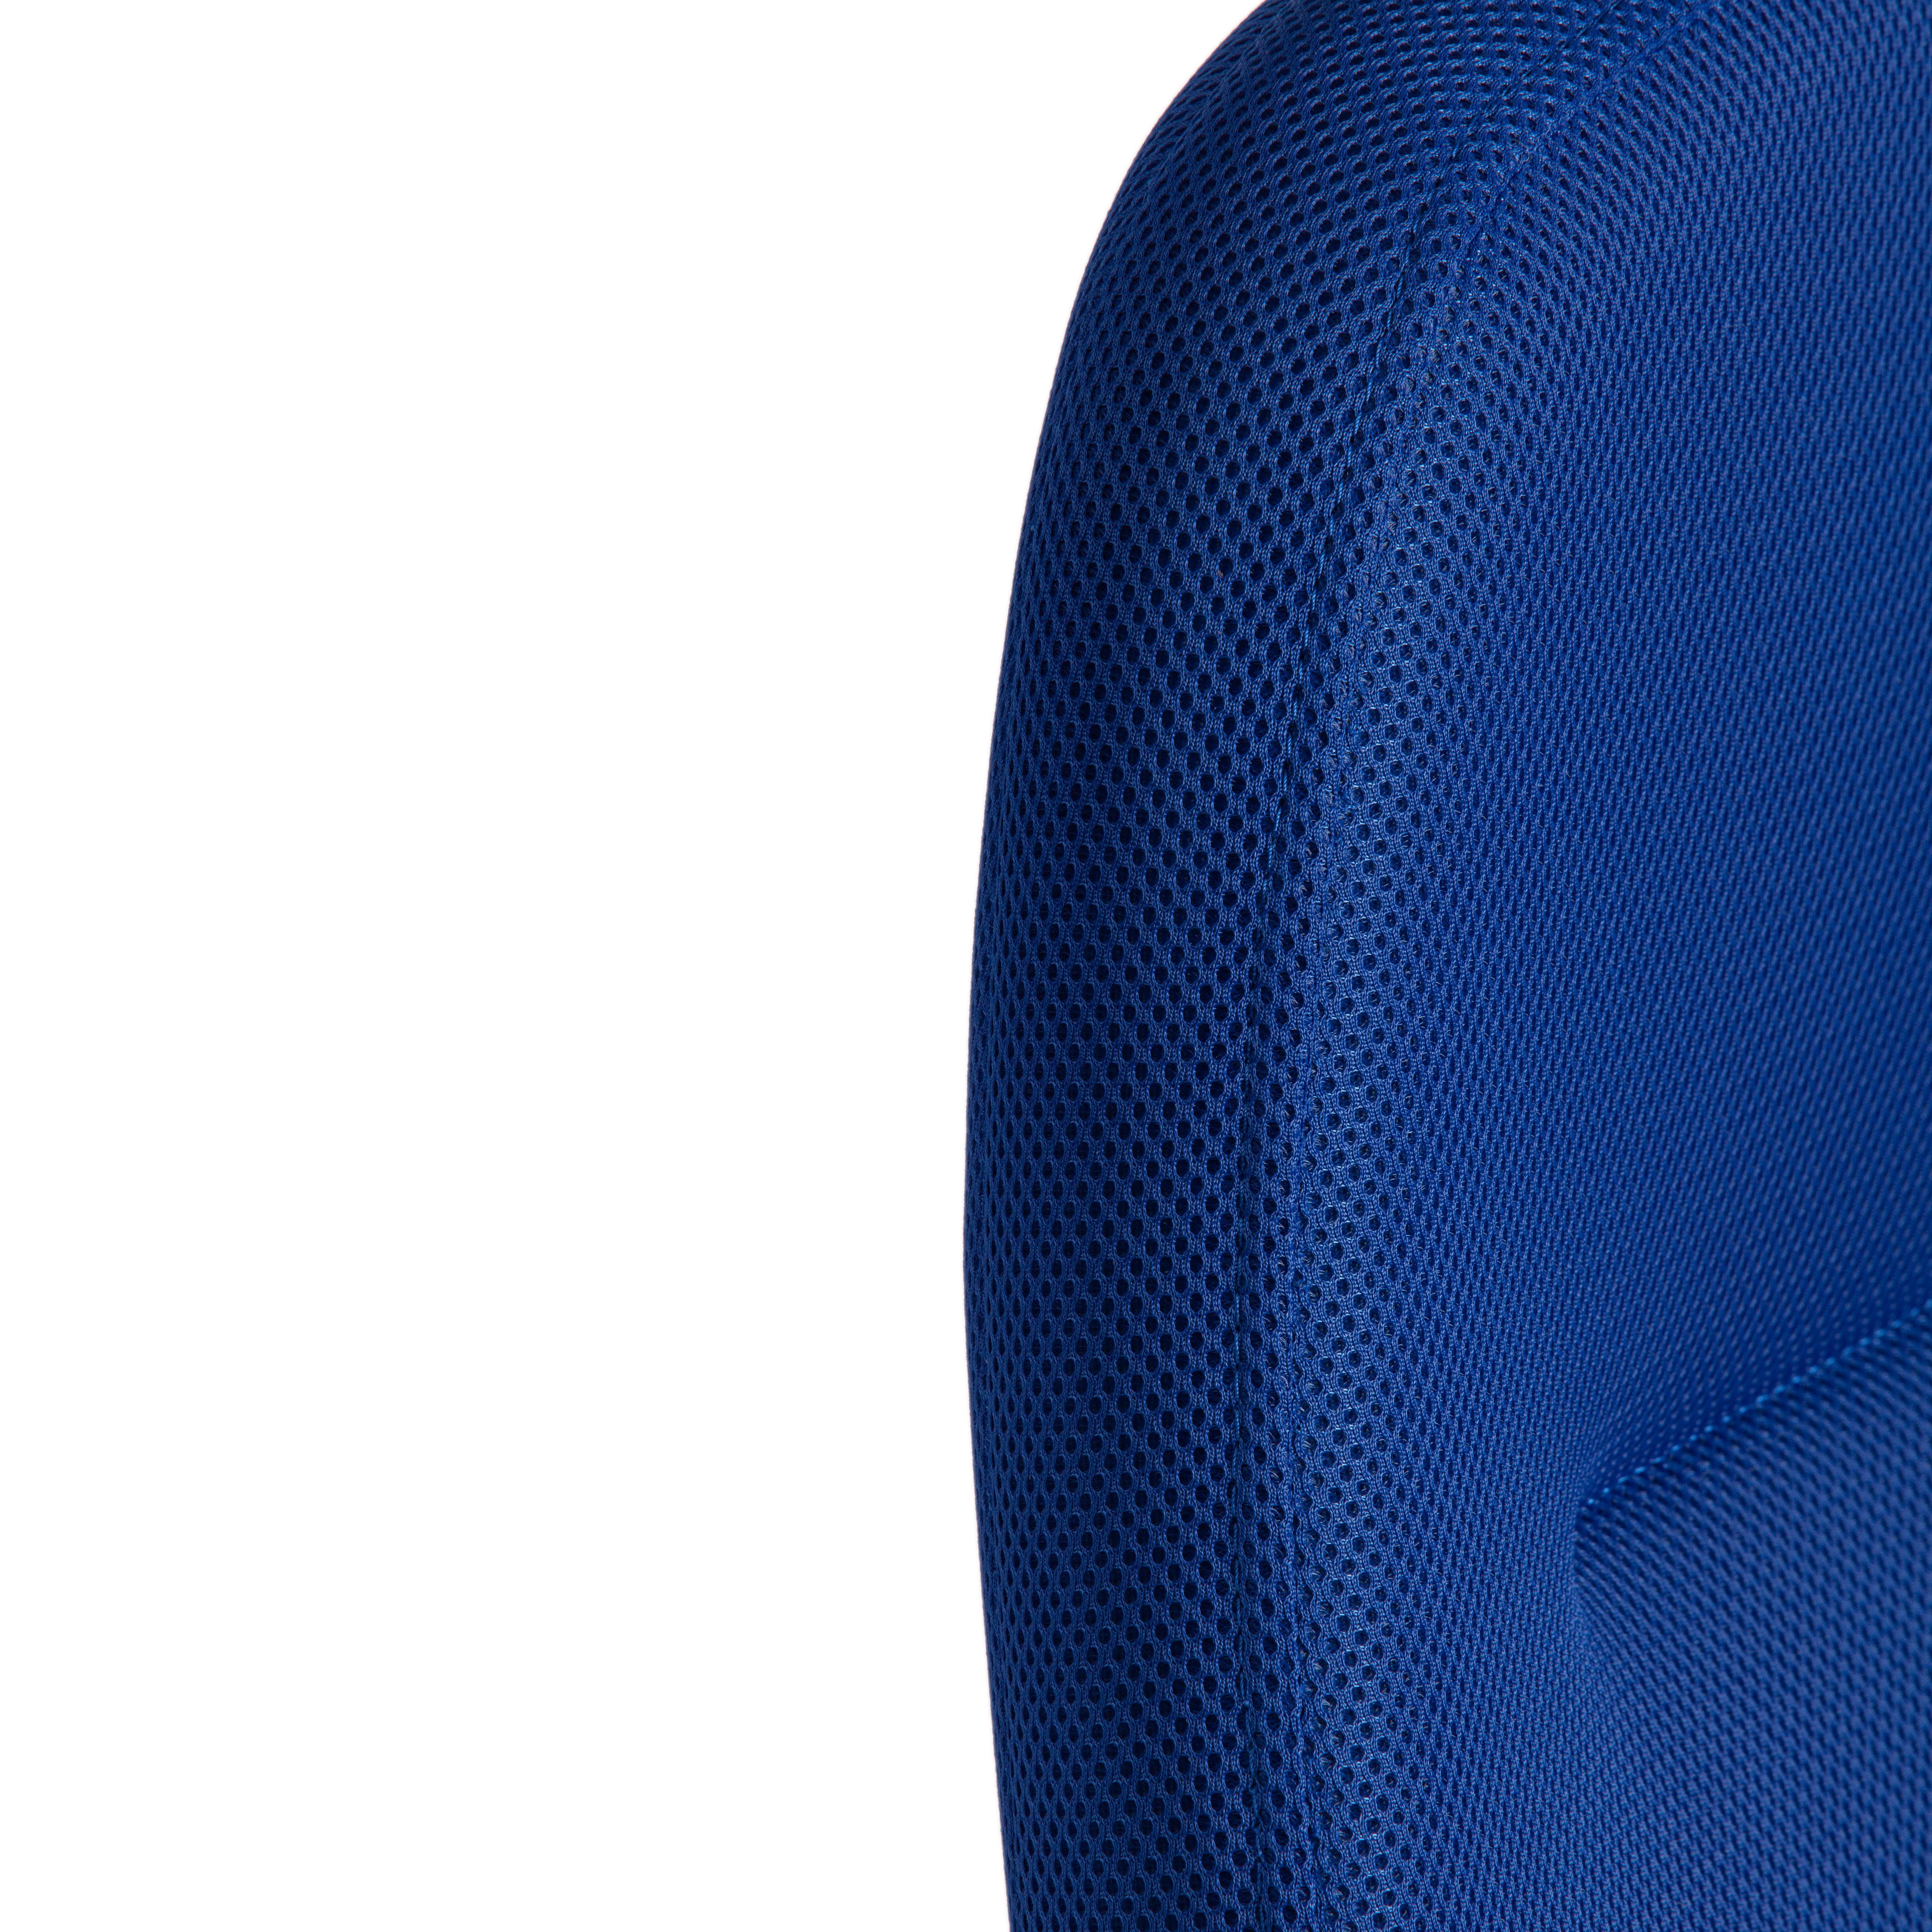 Кресло LEADER ткань, синий, TW-10